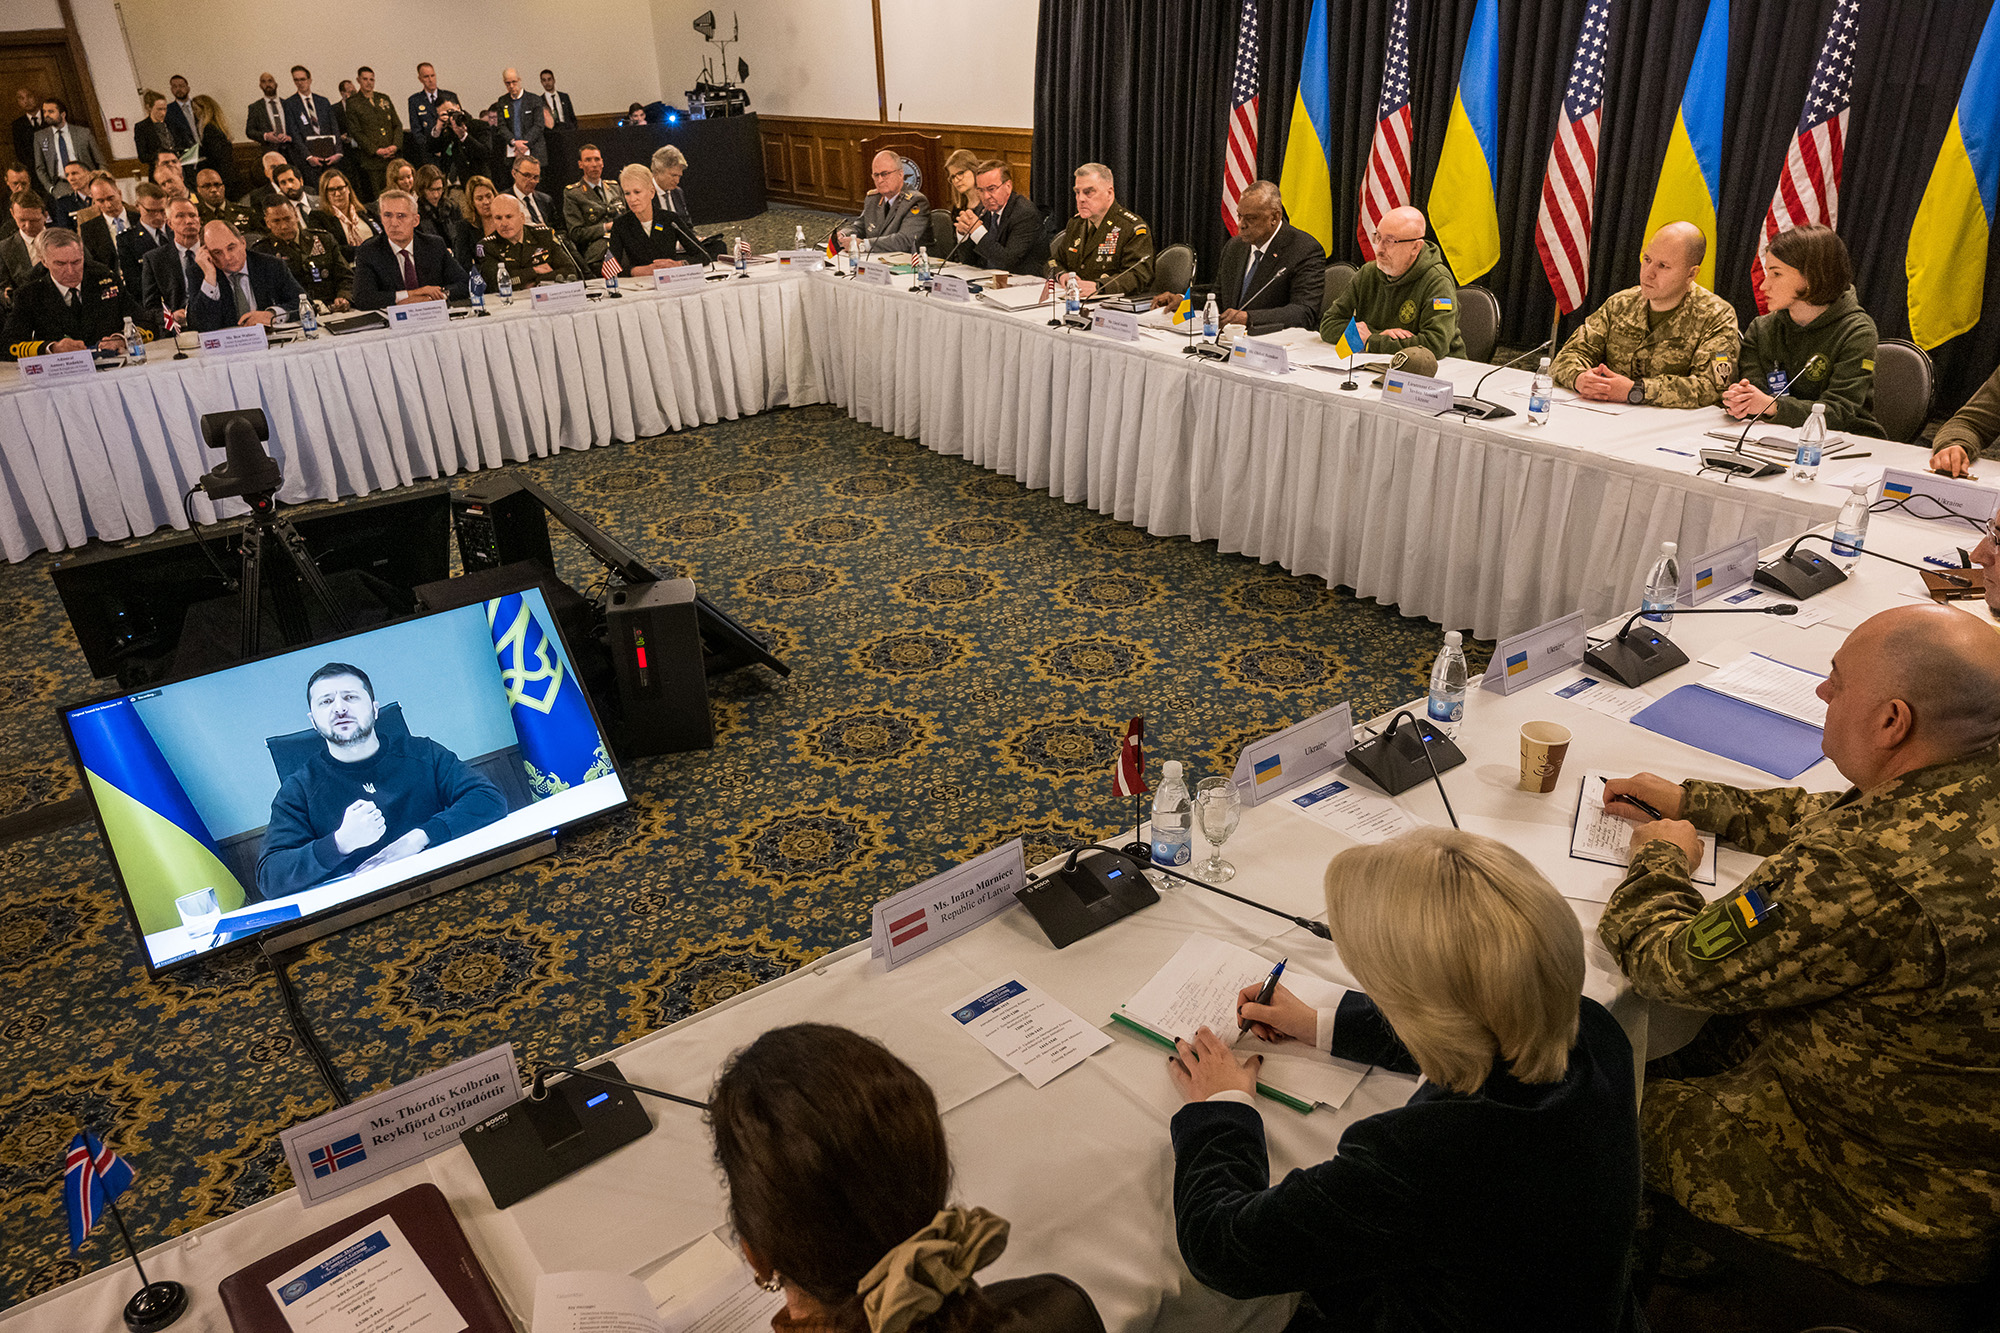 यूक्रेनी राष्ट्रपति वलोडिमिर ज़ेलेंस्की 20 जनवरी को रामस्टीन-मिसेनबैक, जर्मनी में रामस्टीन एयर बेस में यूक्रेन रक्षा संपर्क समूह की एक बैठक को संबोधित करते हैं।